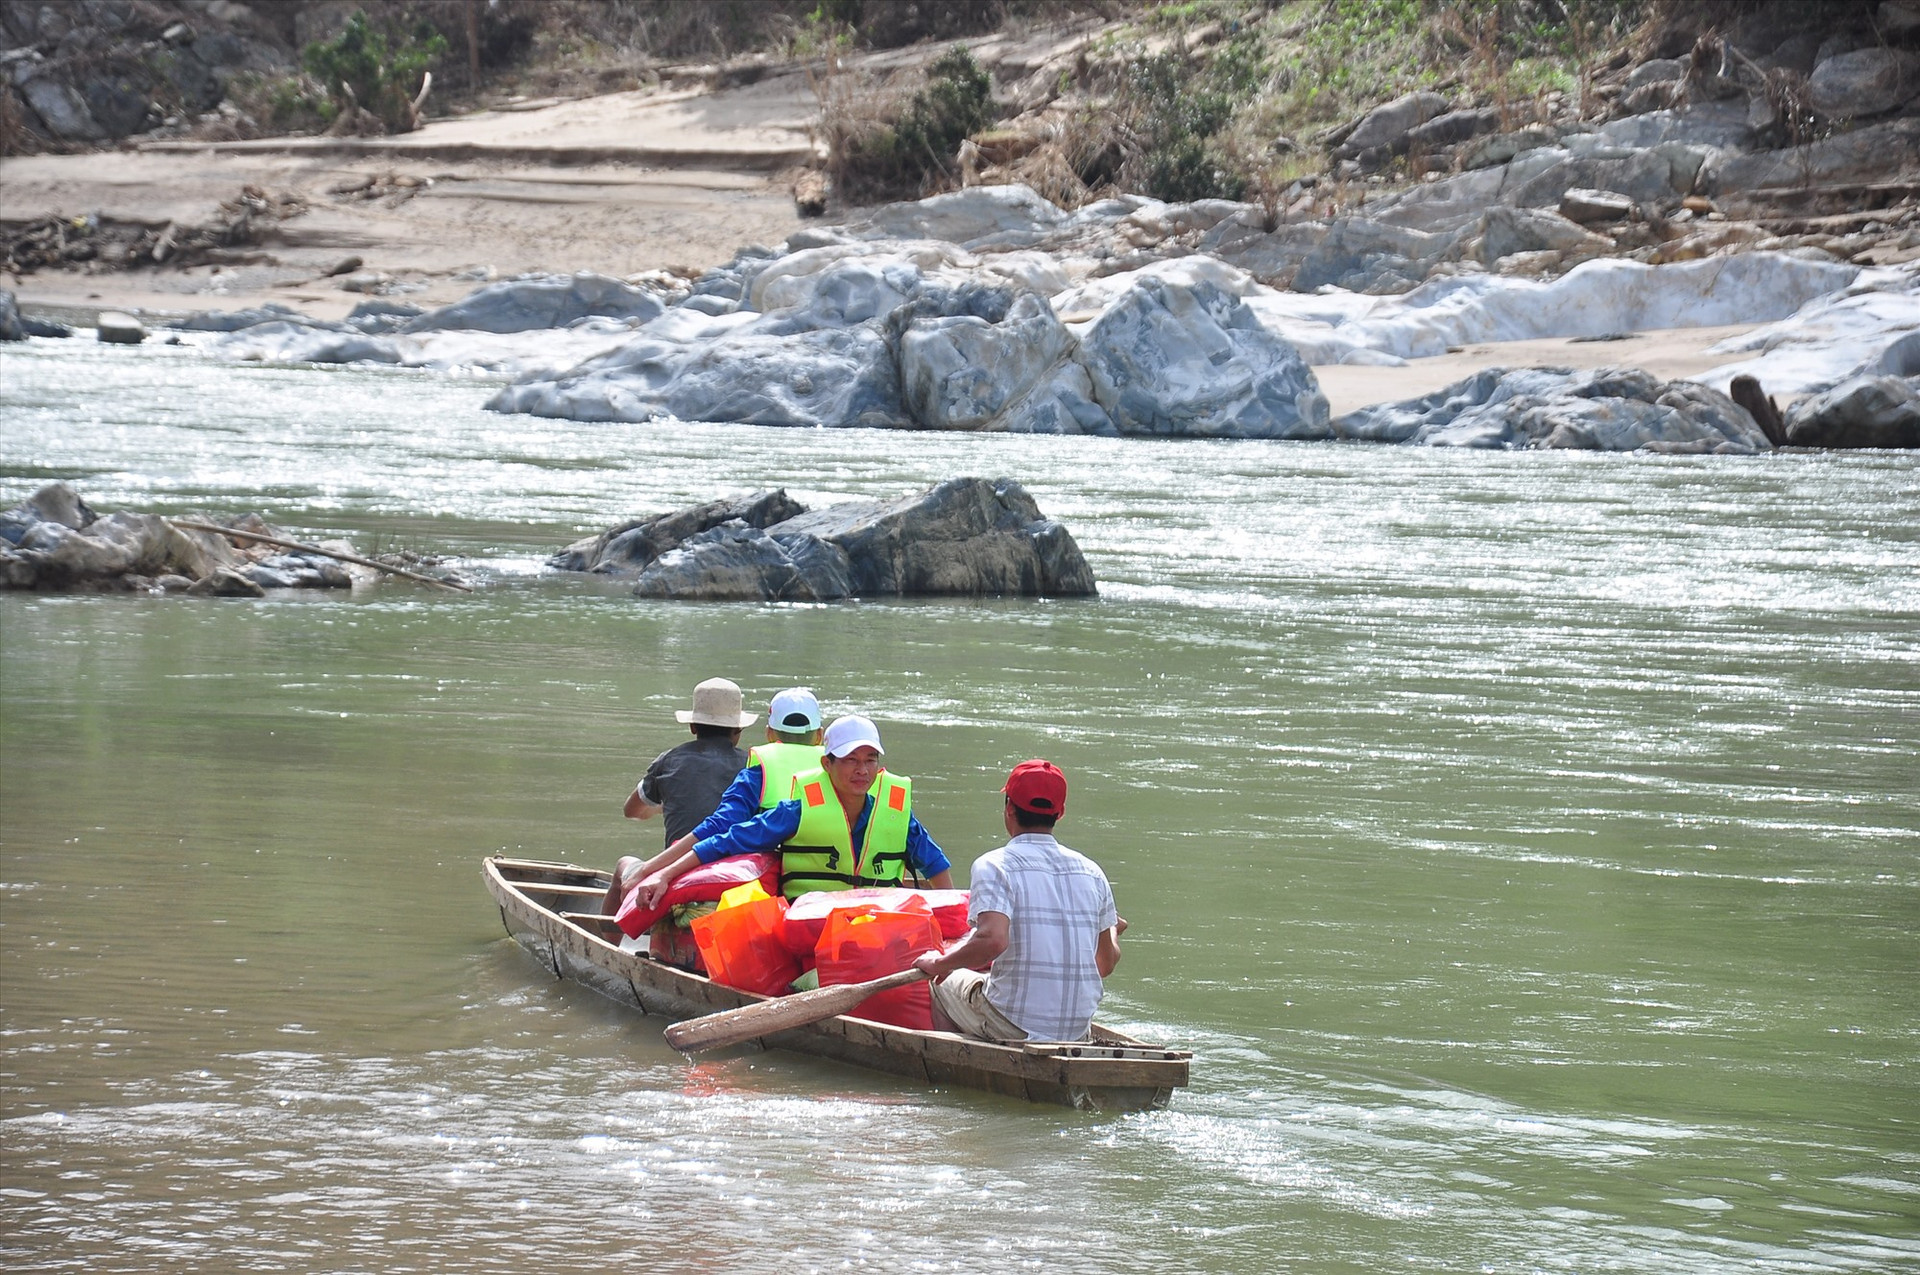 Để vượt sông Tranh đòi hỏi những người chèo đò phải có kinh nghiệm, am hiểm dòng chảy. Ảnh: VINH ANH